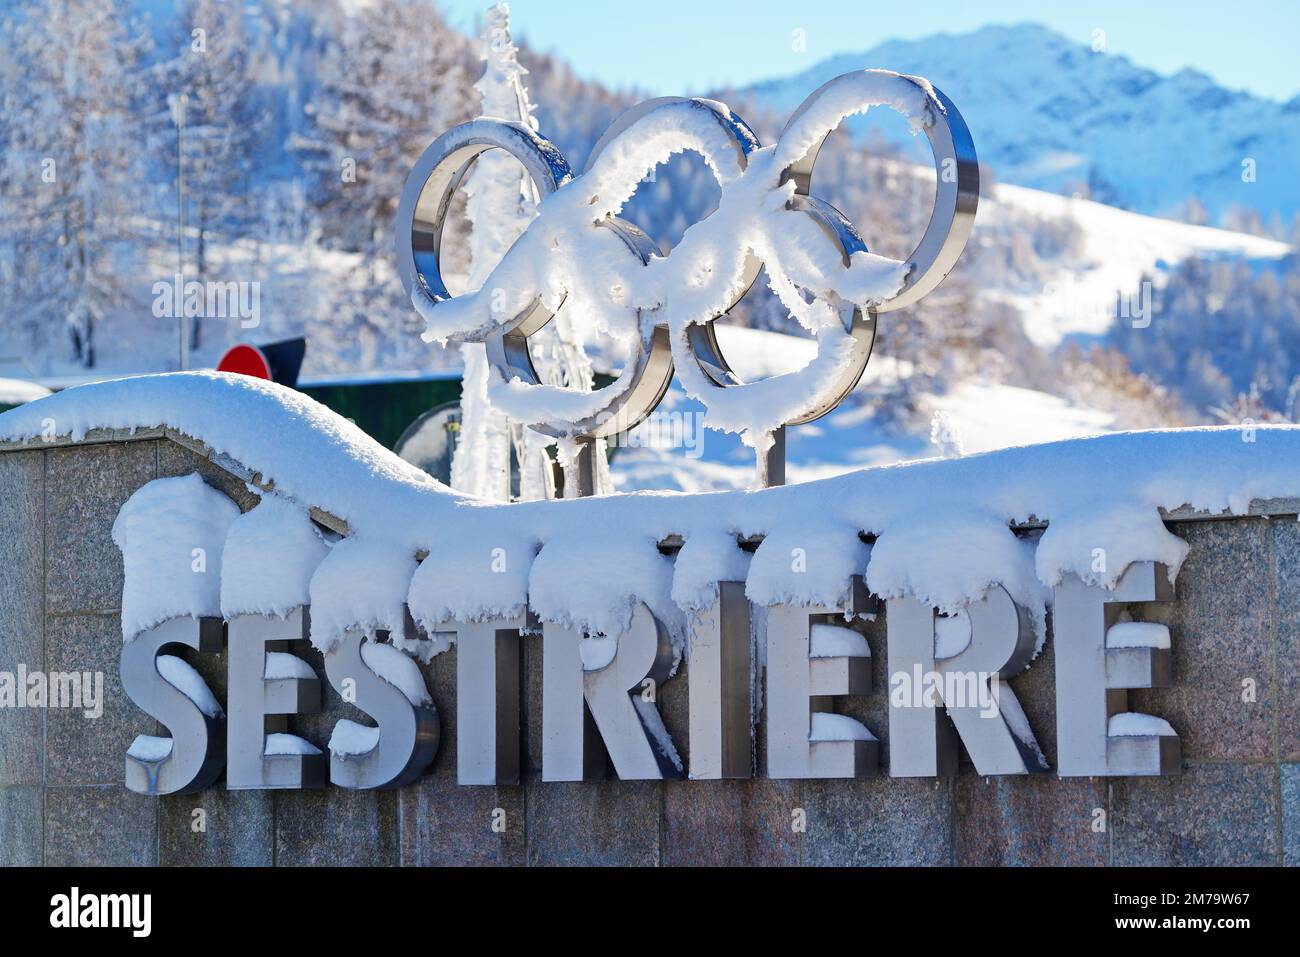 Zeichen des alpinen Dorfes Sestriere, in dem die Olympischen Winterspiele 2006 stattfanden. Sestriere, Italien - 2022. Dezember Stockfoto